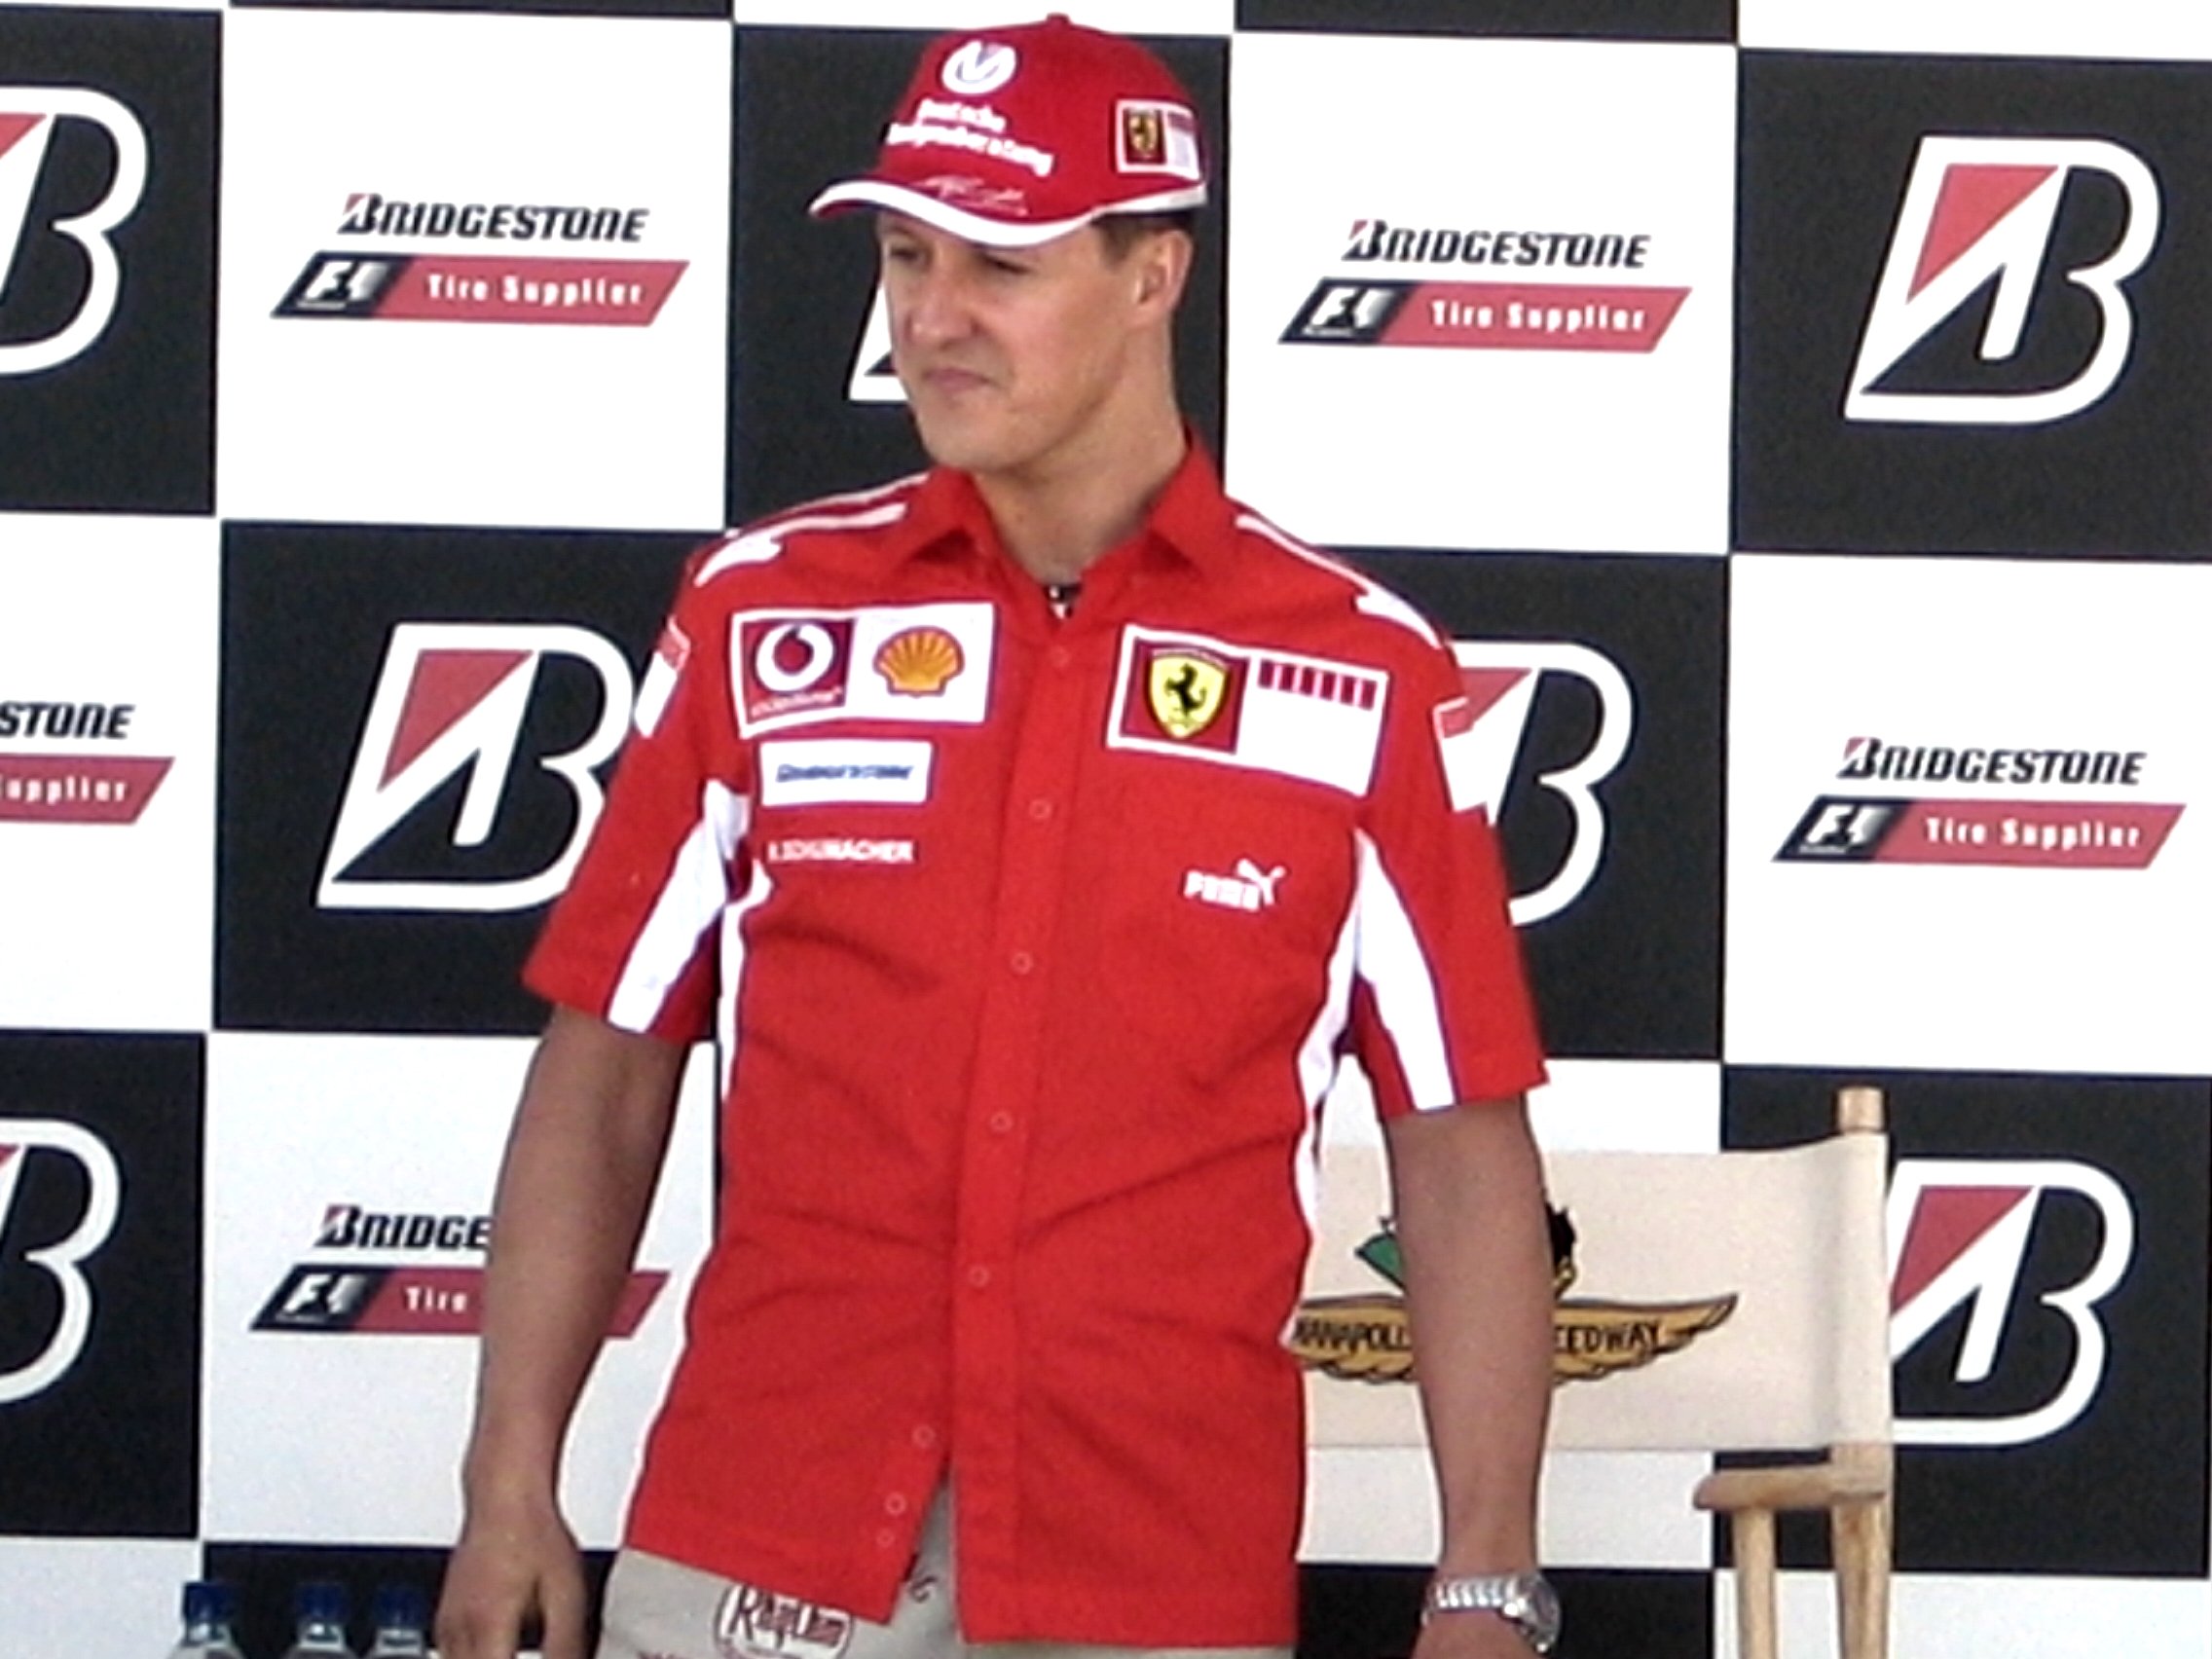 Dudas con la llegada de Schumacher a Mallorca